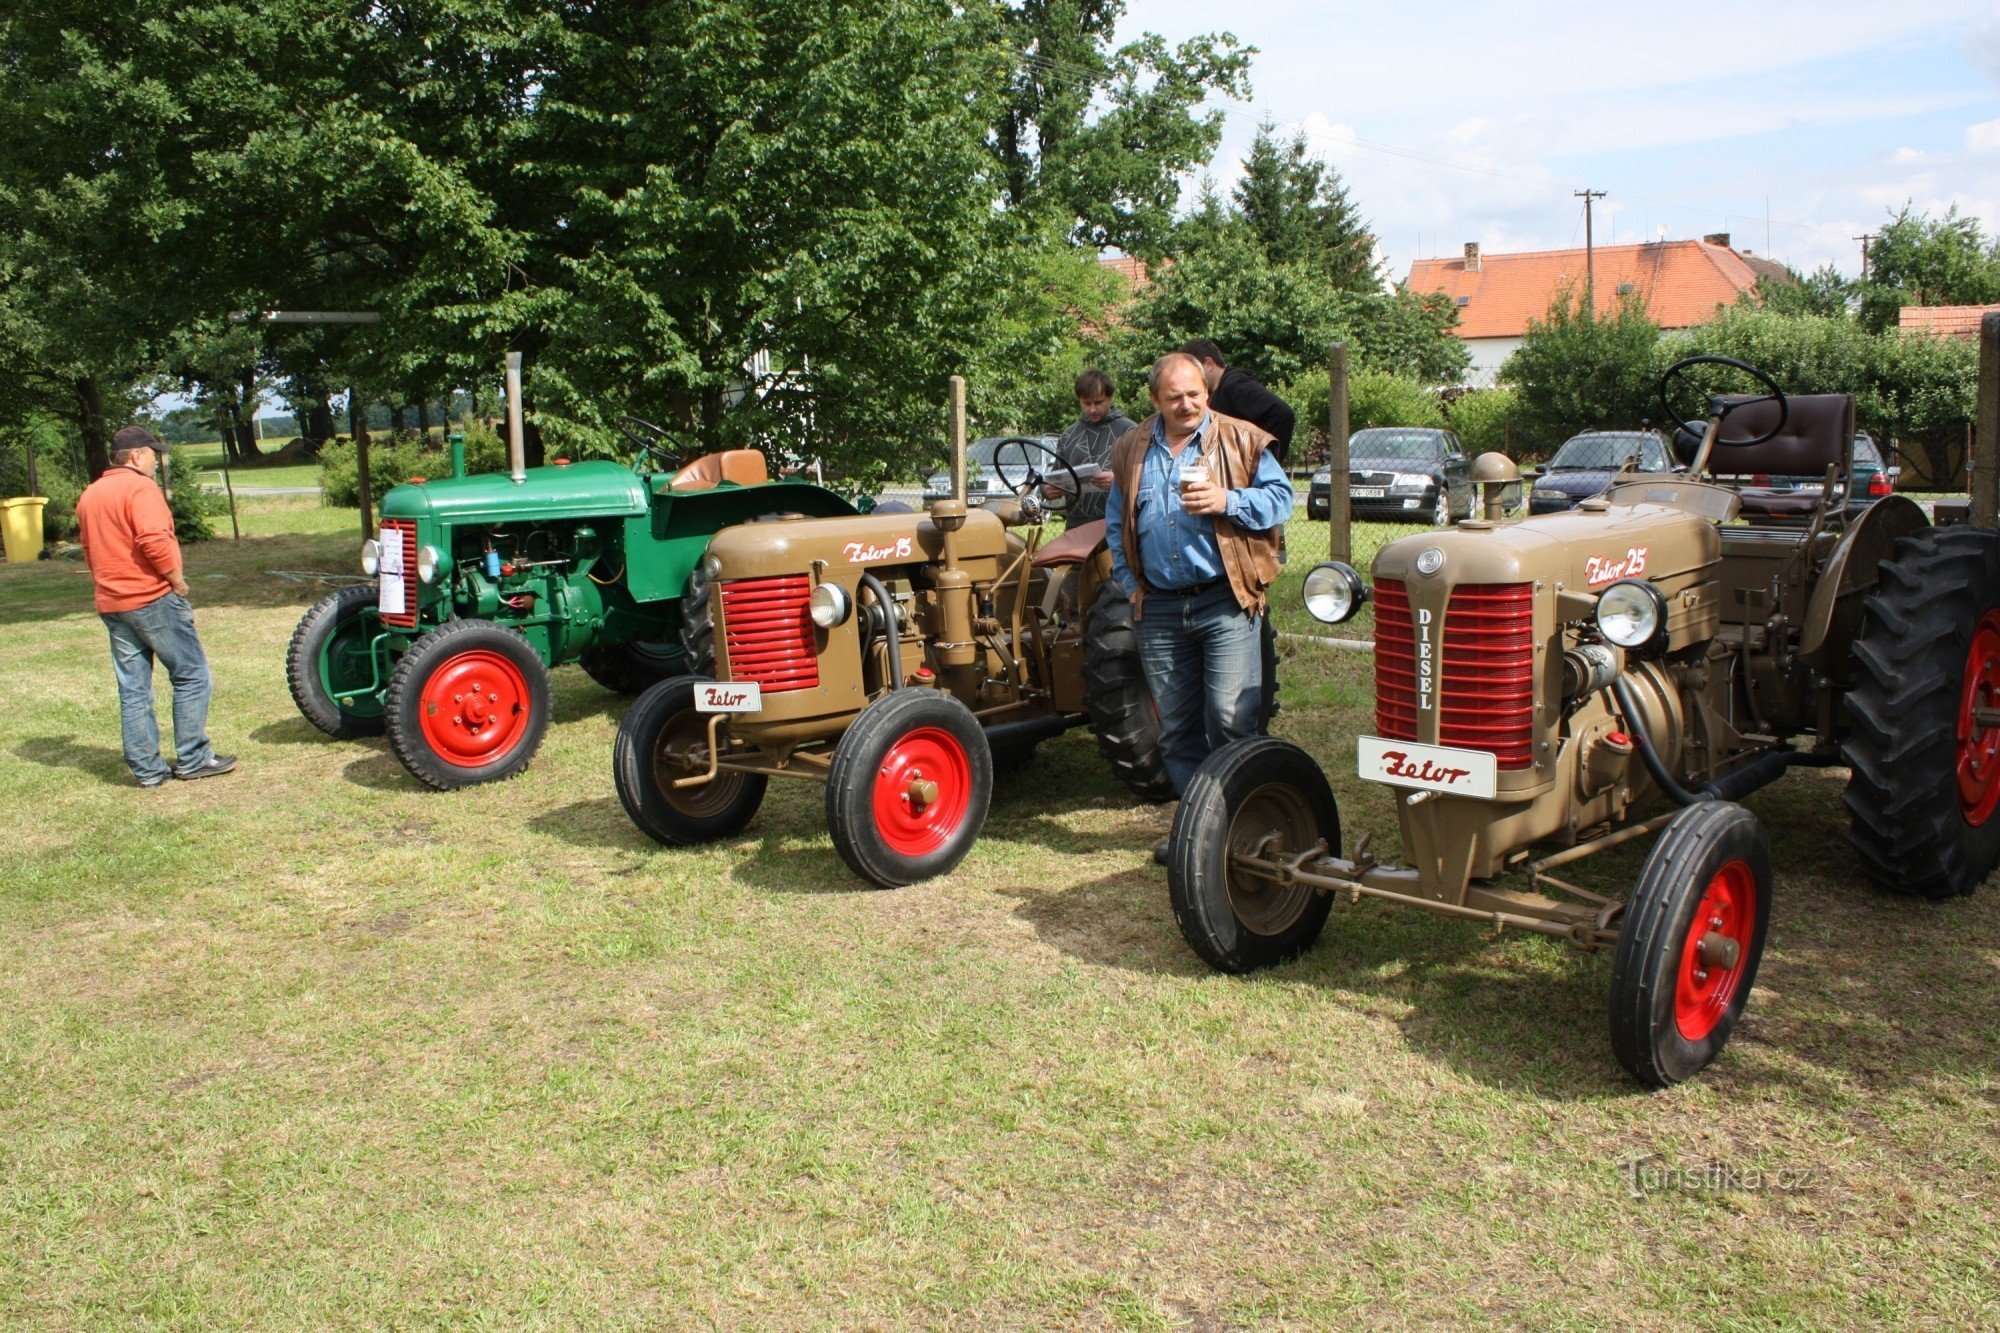 Mr. Václav Brožek's tractors at the Němčice meeting in the village of Němčice near Netolic